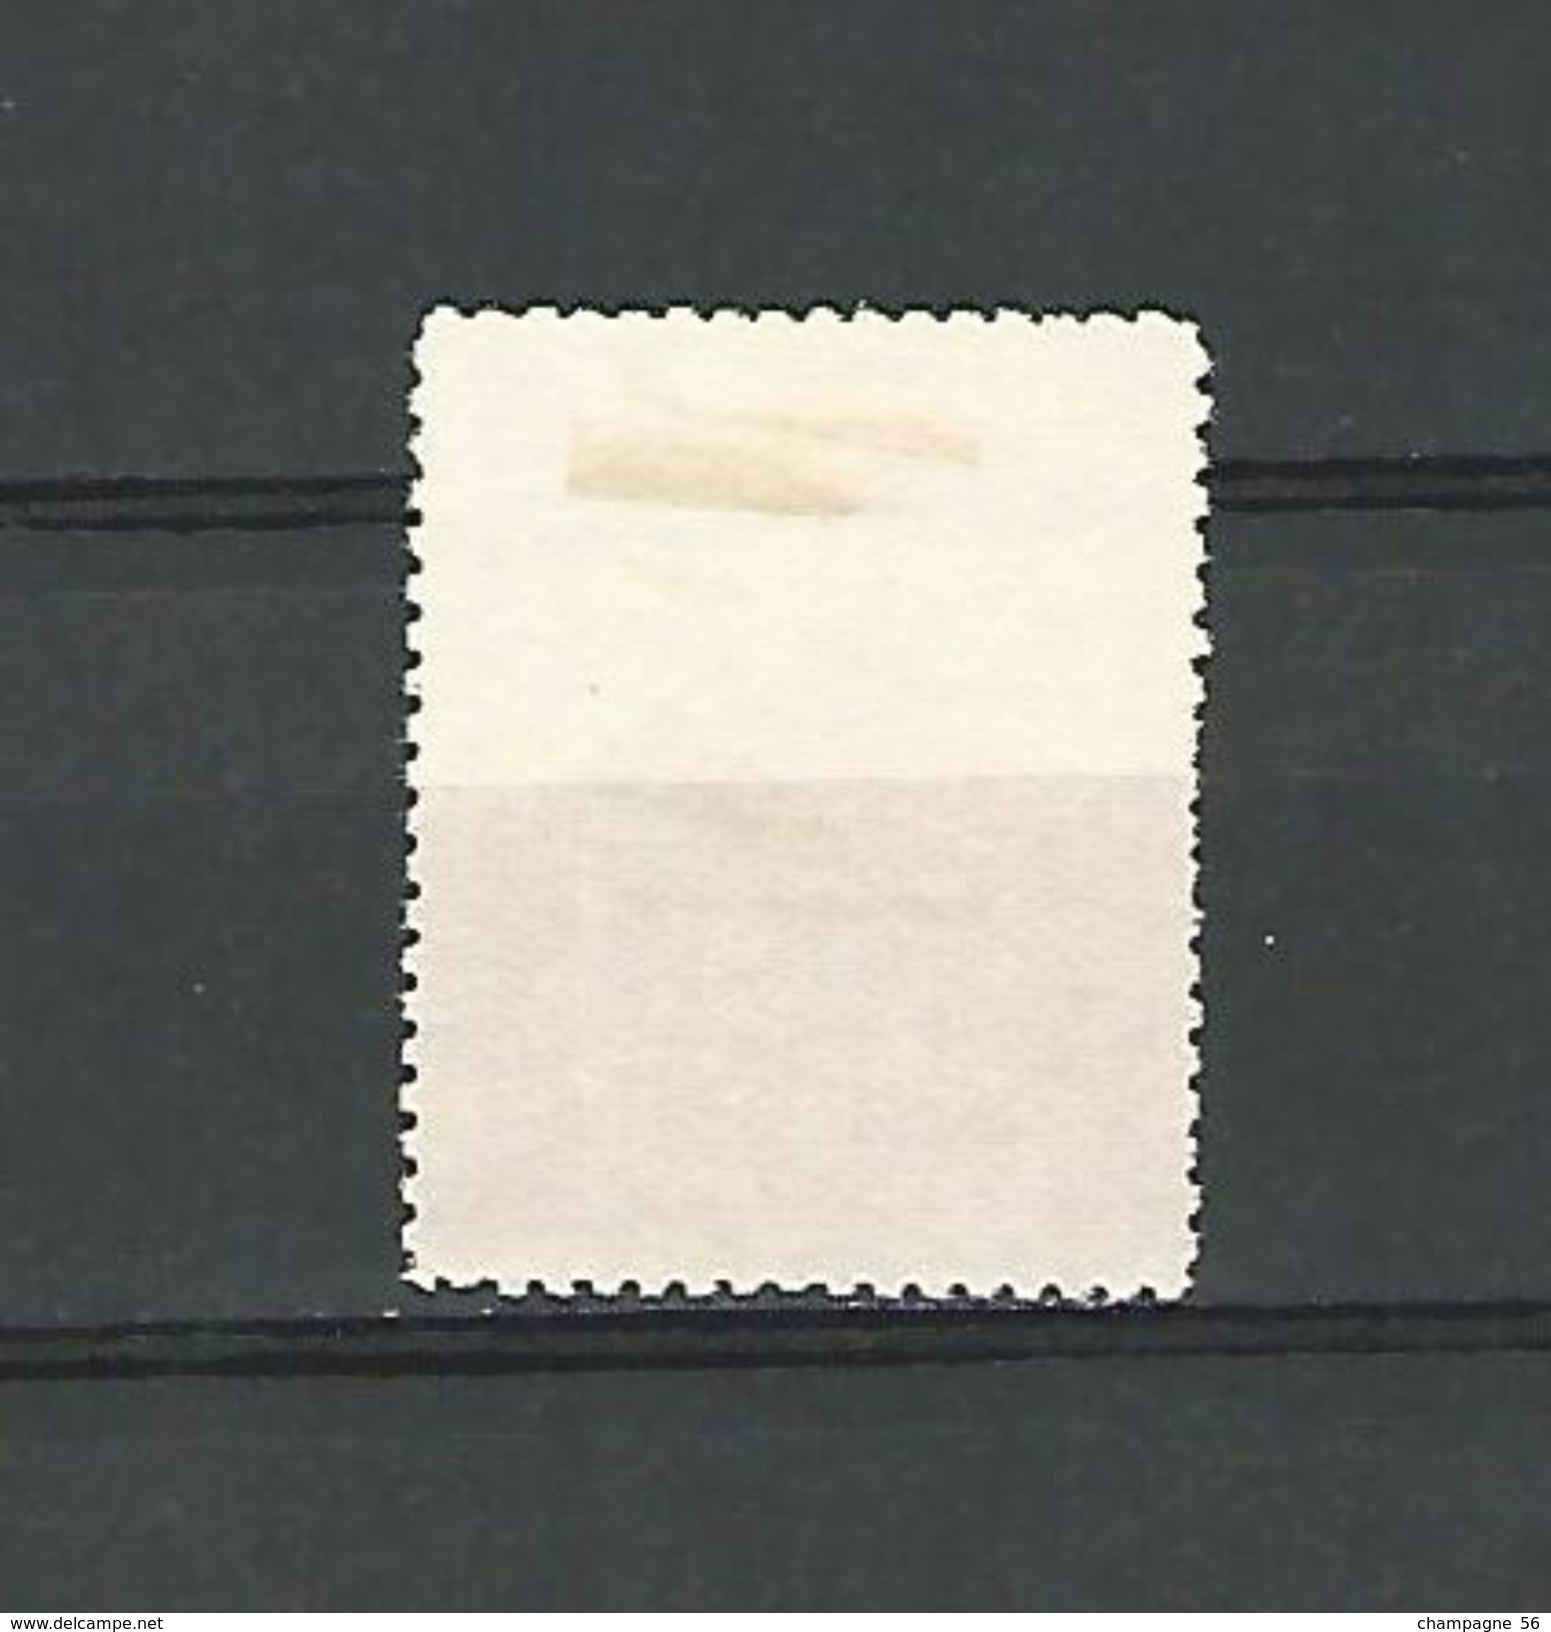 1939 / 1940 N° 30 BÖHMEN  CATHÉDRALE DE BRNO  1.50 K  OBLITÉRÉ DOS CHARNIÈRE - Used Stamps